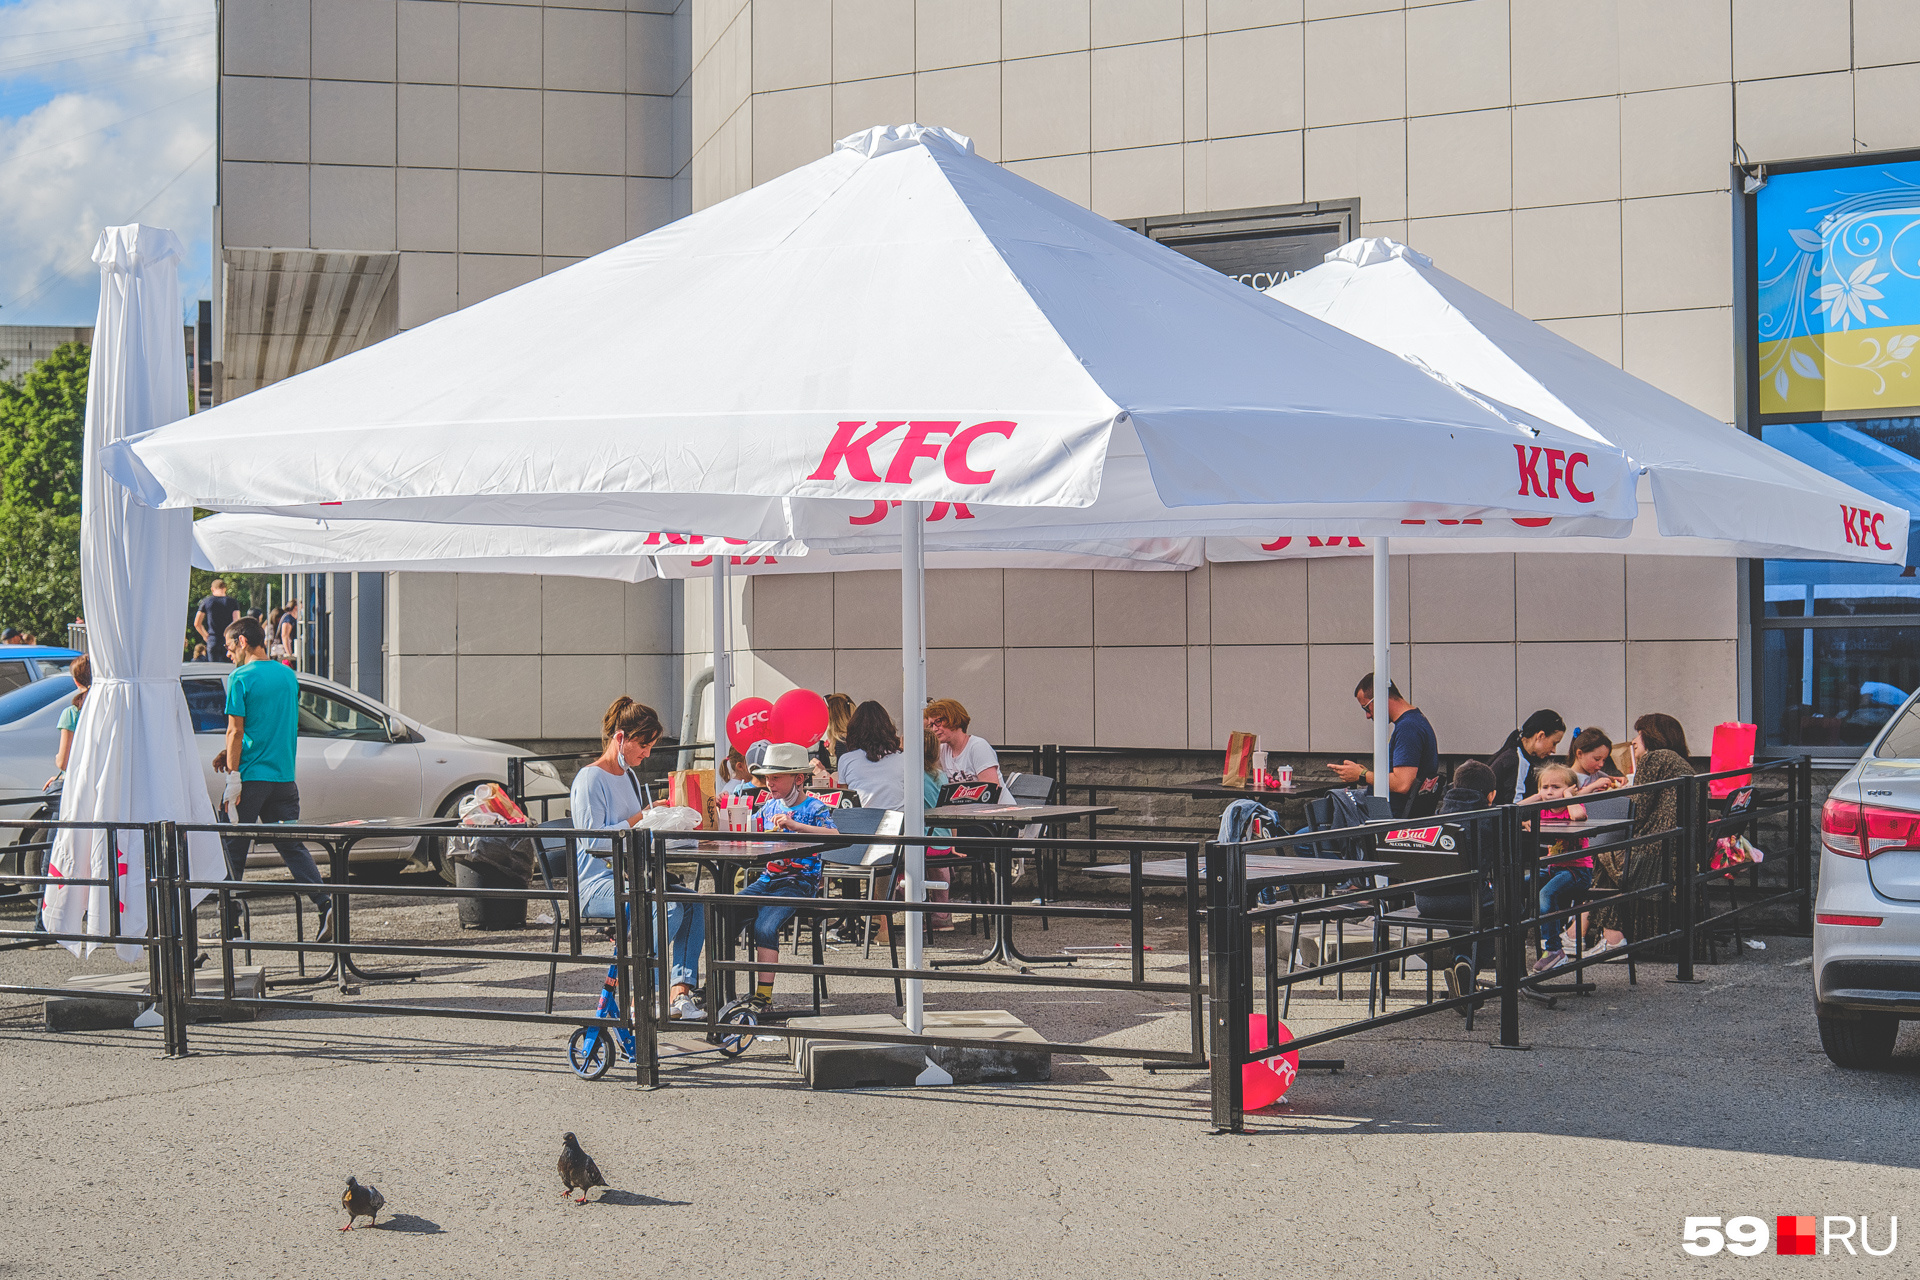 Рестораны быстрого питания тоже открыли летники: и KFC на Крисанова...